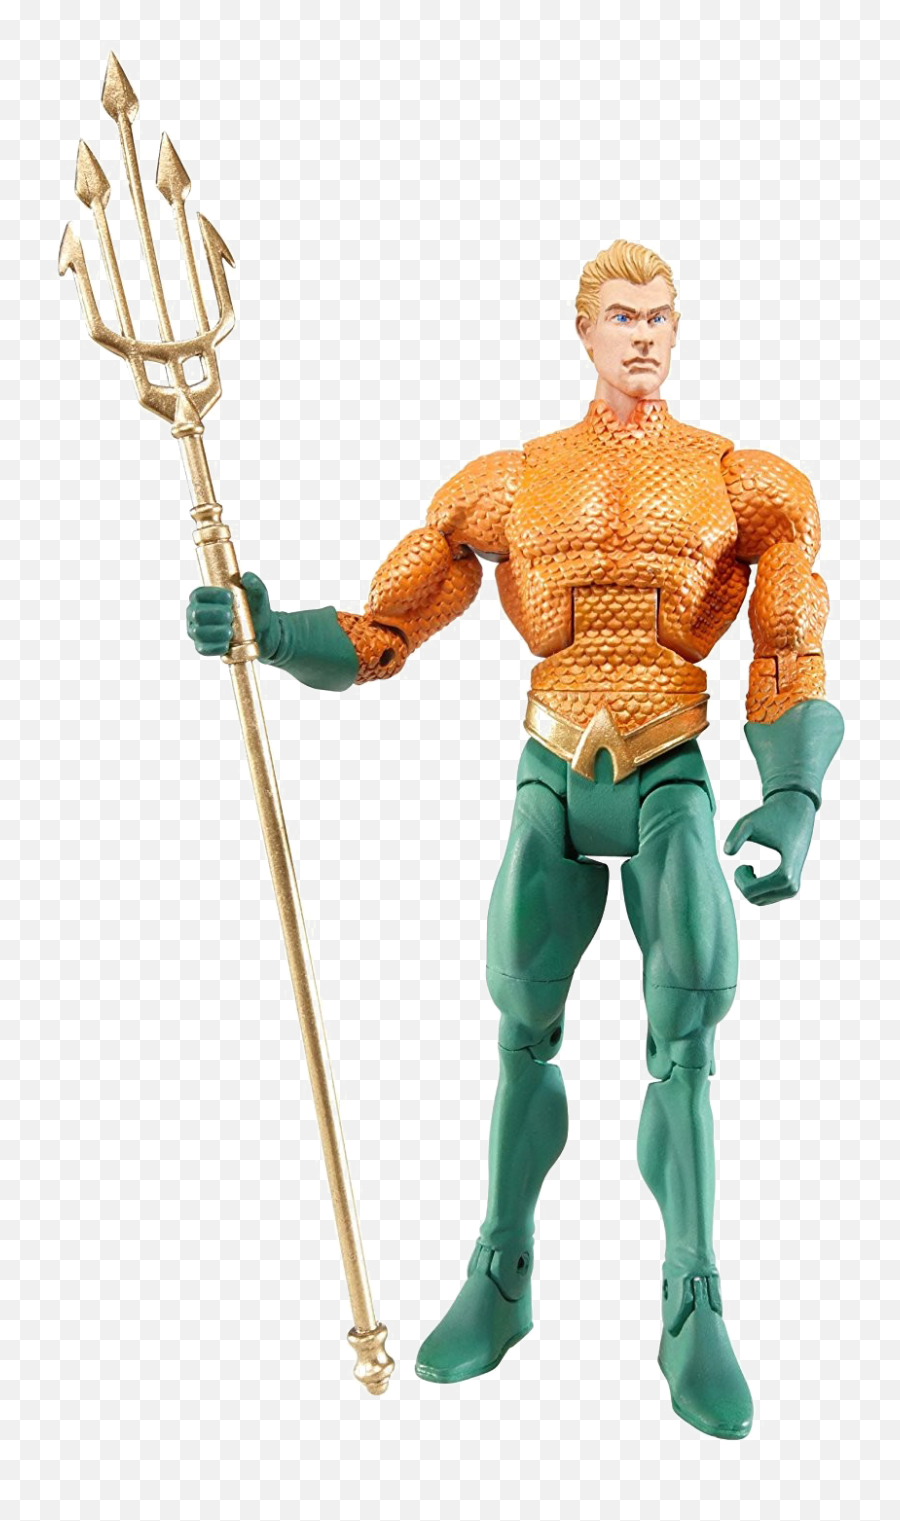 Aquaman Png Image - Dc Universe Aquaman Figures,Aquaman Png